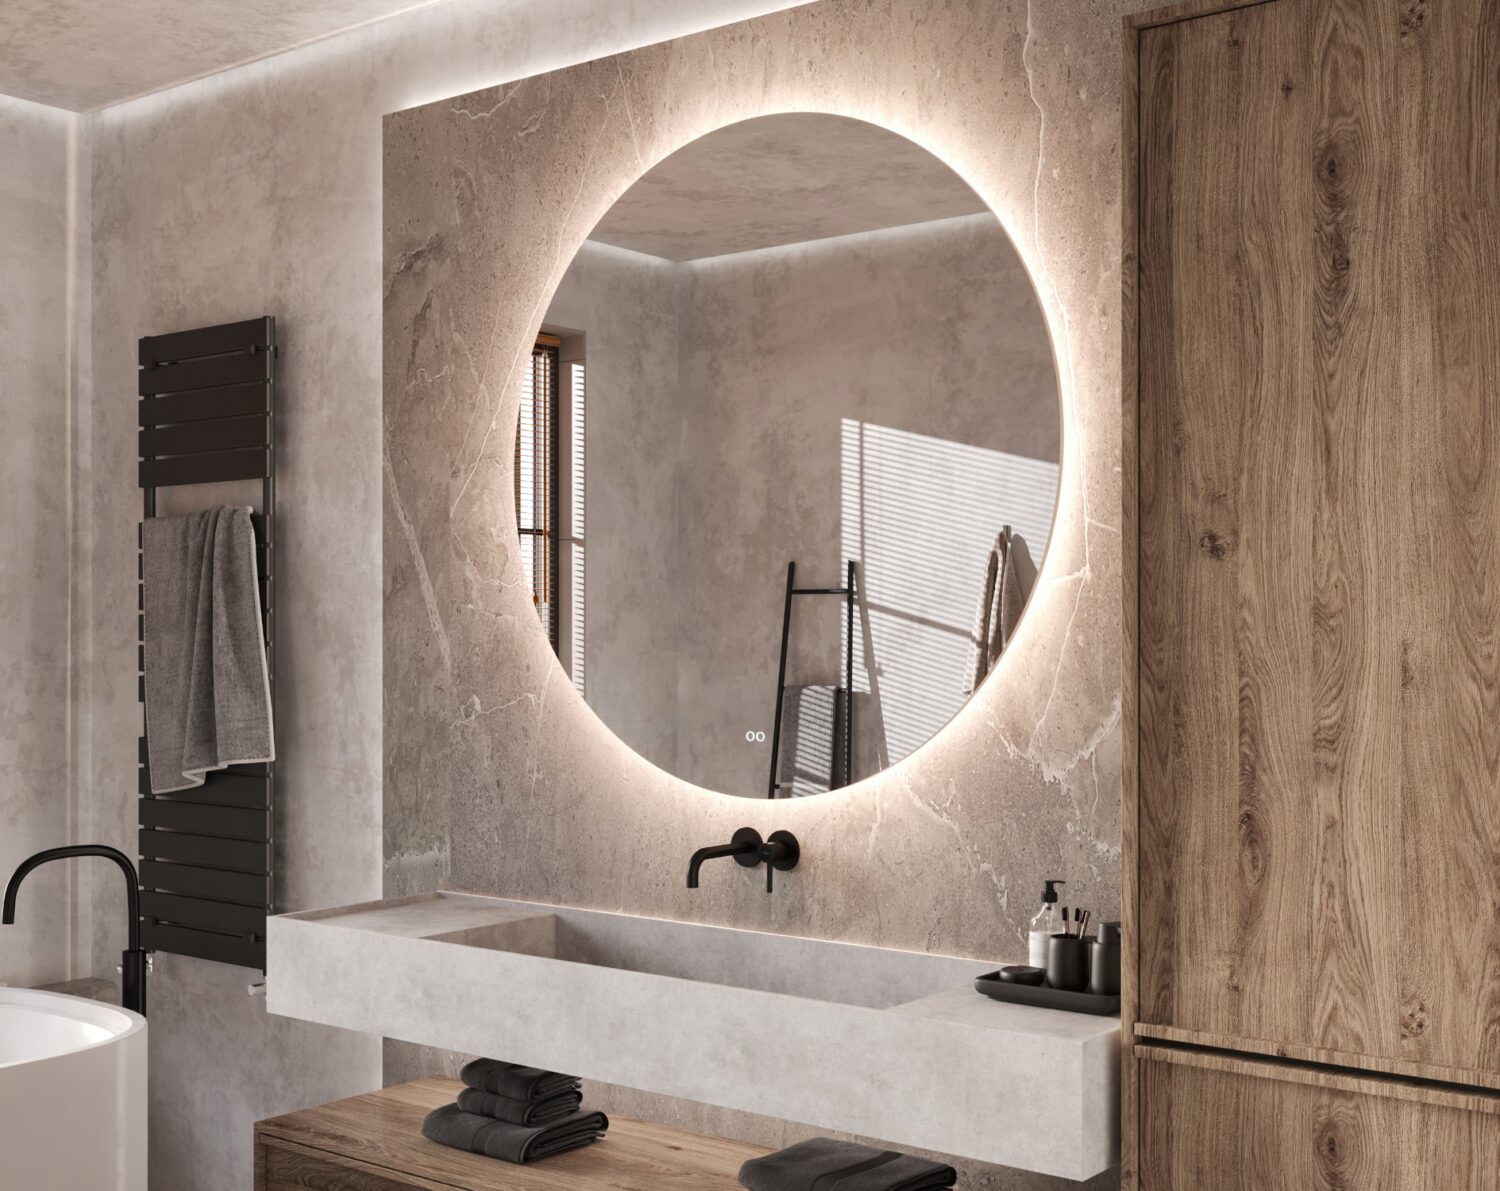 De indirecte verlichting schijnt vanachter de spiegel fraai en sfeervol over de wand en aan de onderzijde over het badmeubel